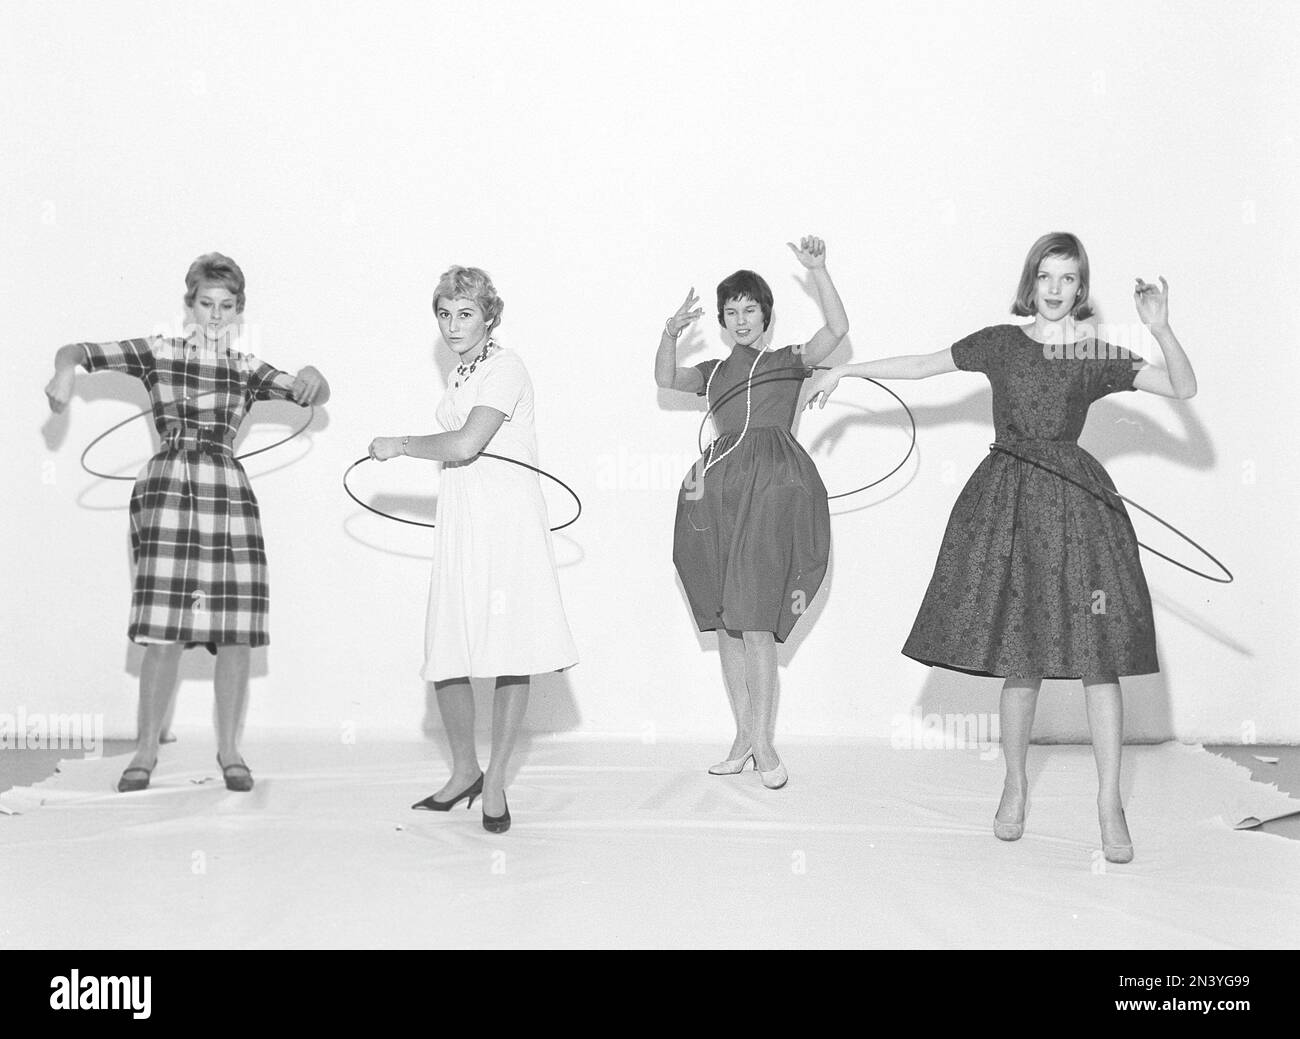 Dans le 1950s. Hula boucle pour femmes. Une folie qui a culminé en 1958 avec quelque 20 millions de bagues de hula vendues en moins de quatre mois aux États-Unis. Suède 1958 réf. BV18-4 Banque D'Images